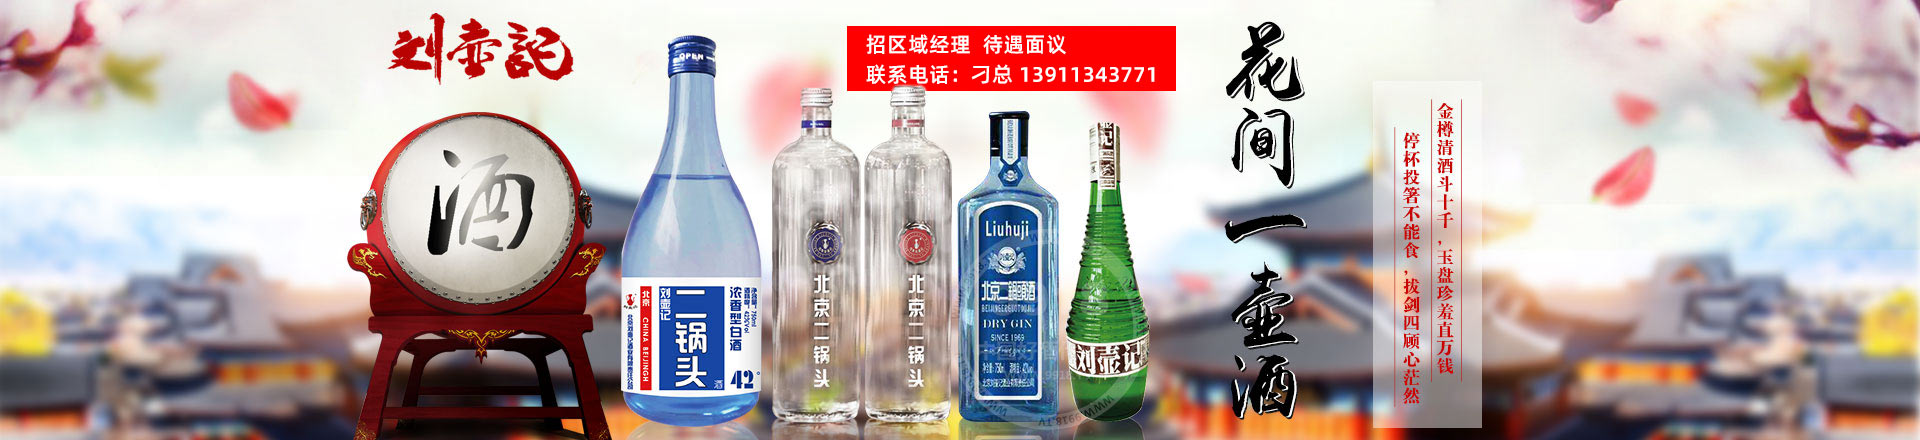 北京刘壶记酒业有限责任公司